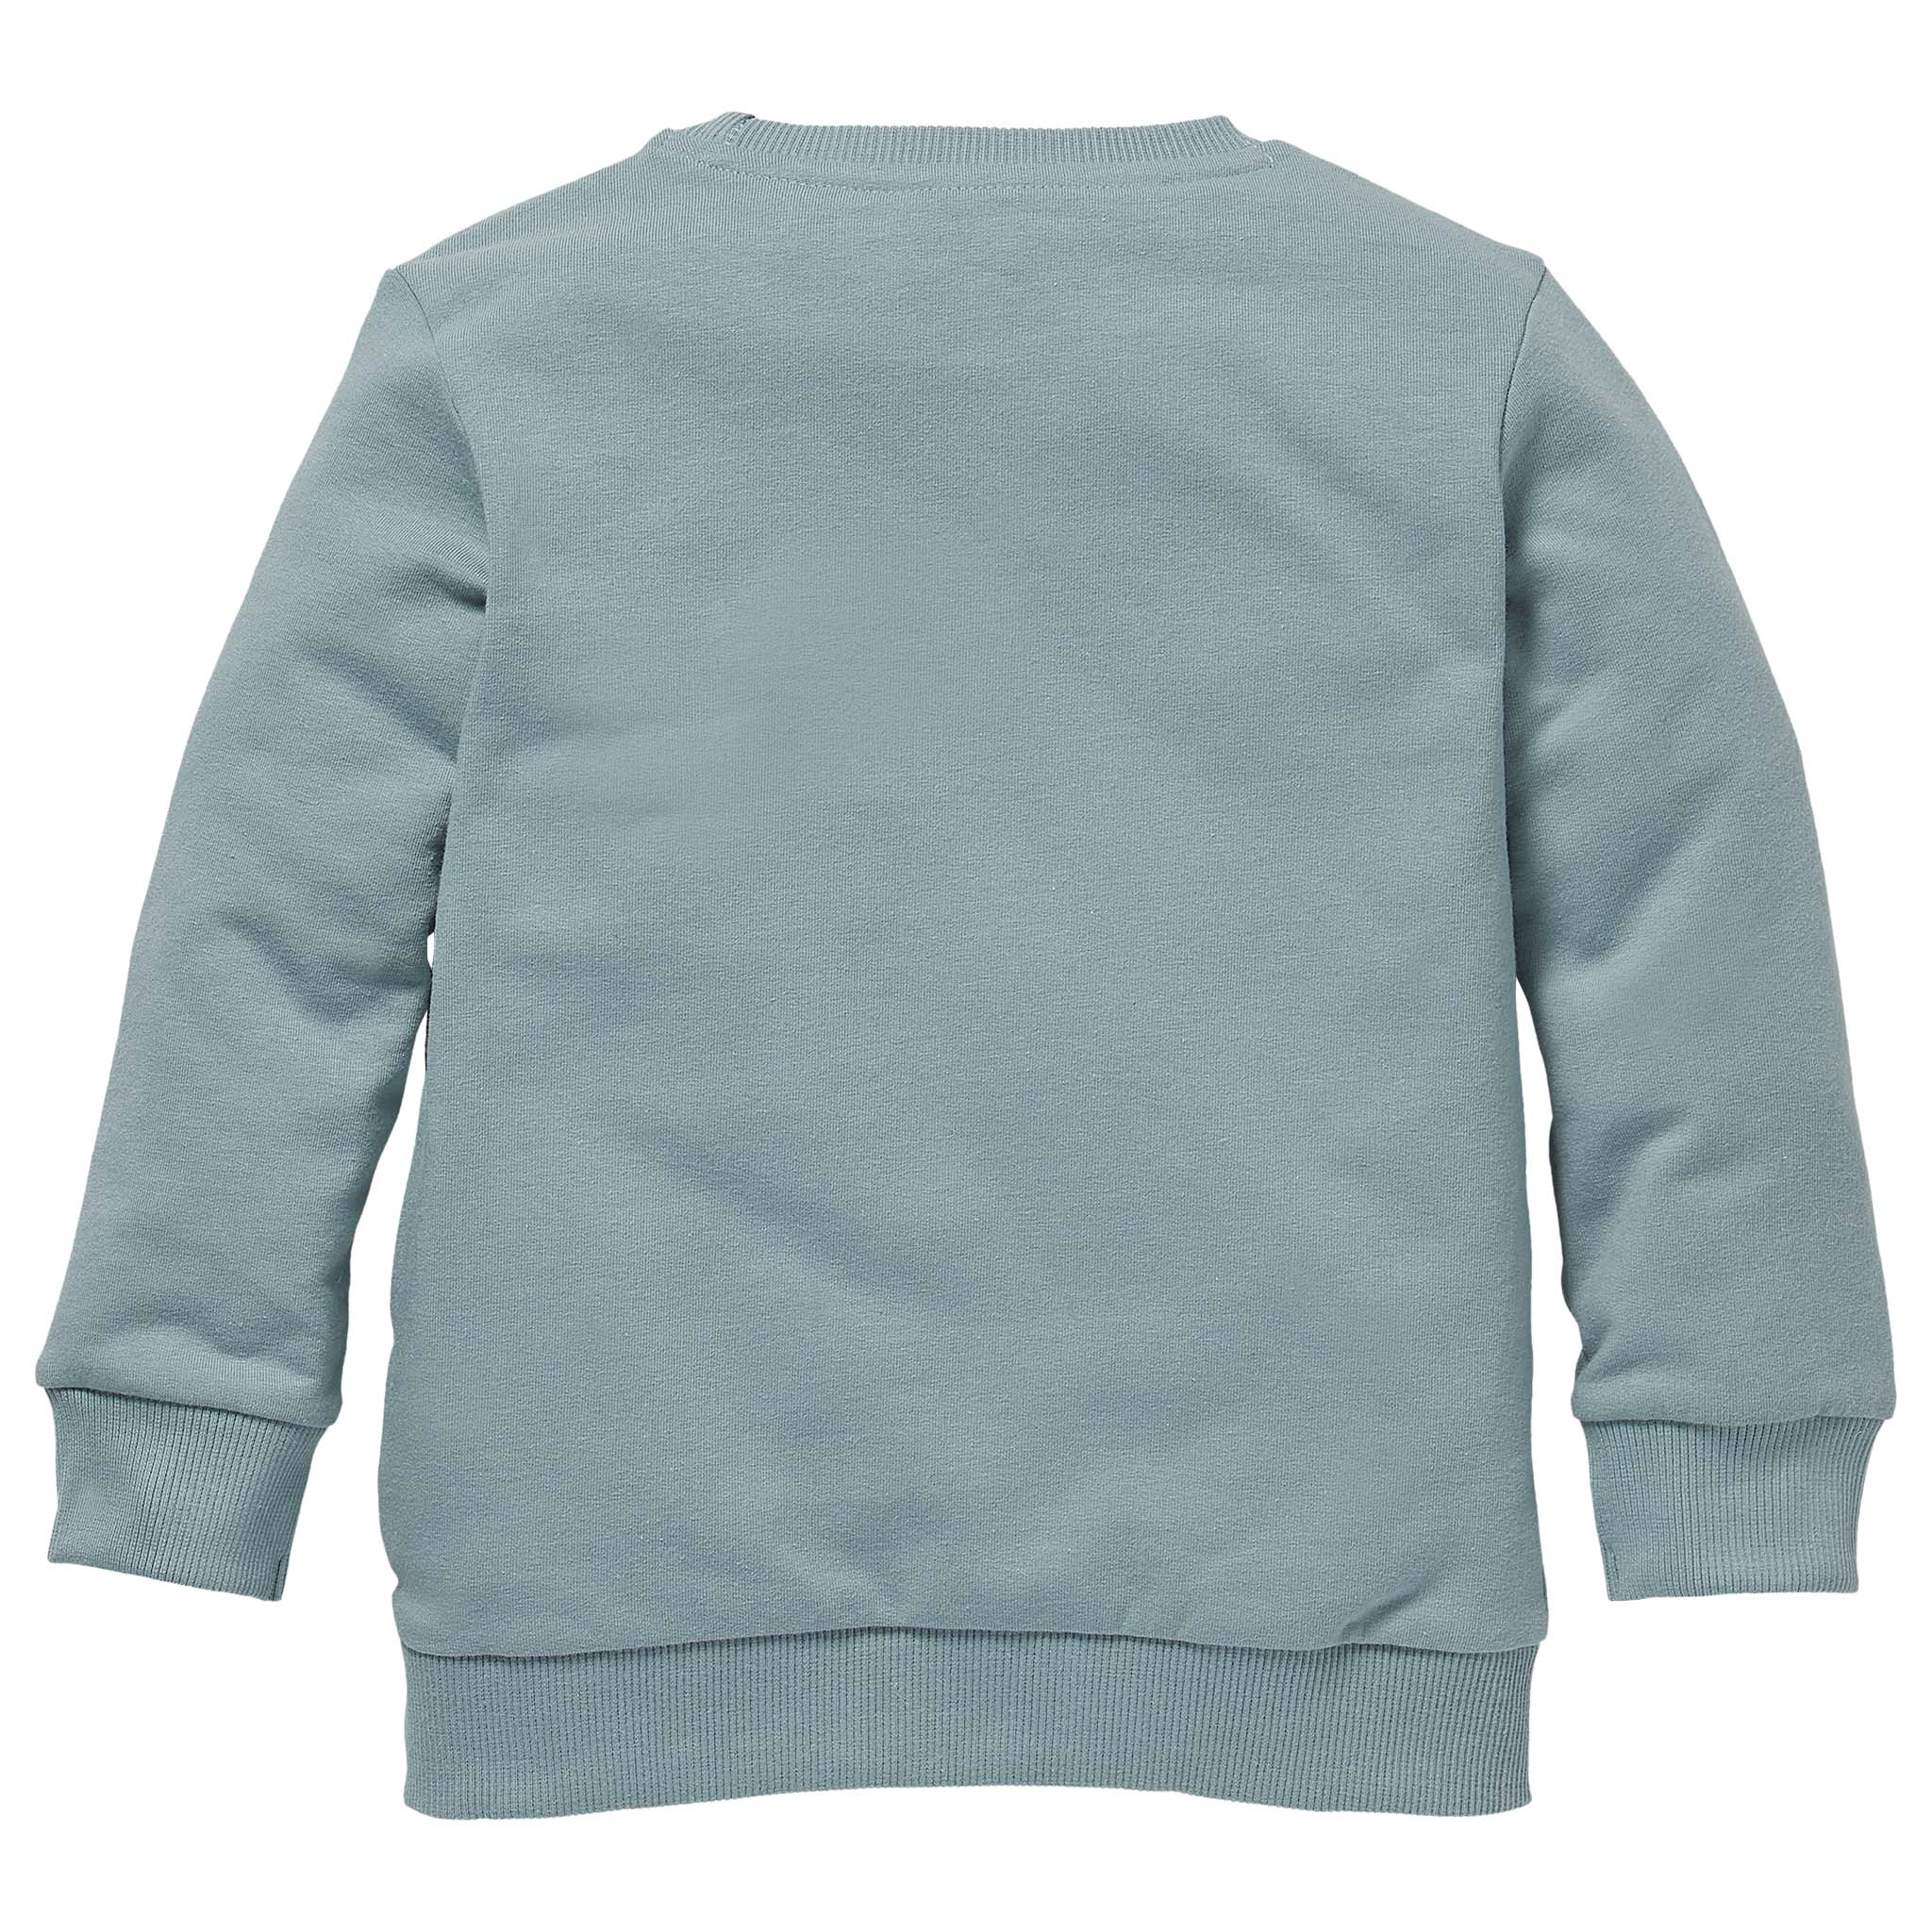 Jongens Sweater SERGIO W211 van Little Levv in de kleur Blue Mist in maat 116.